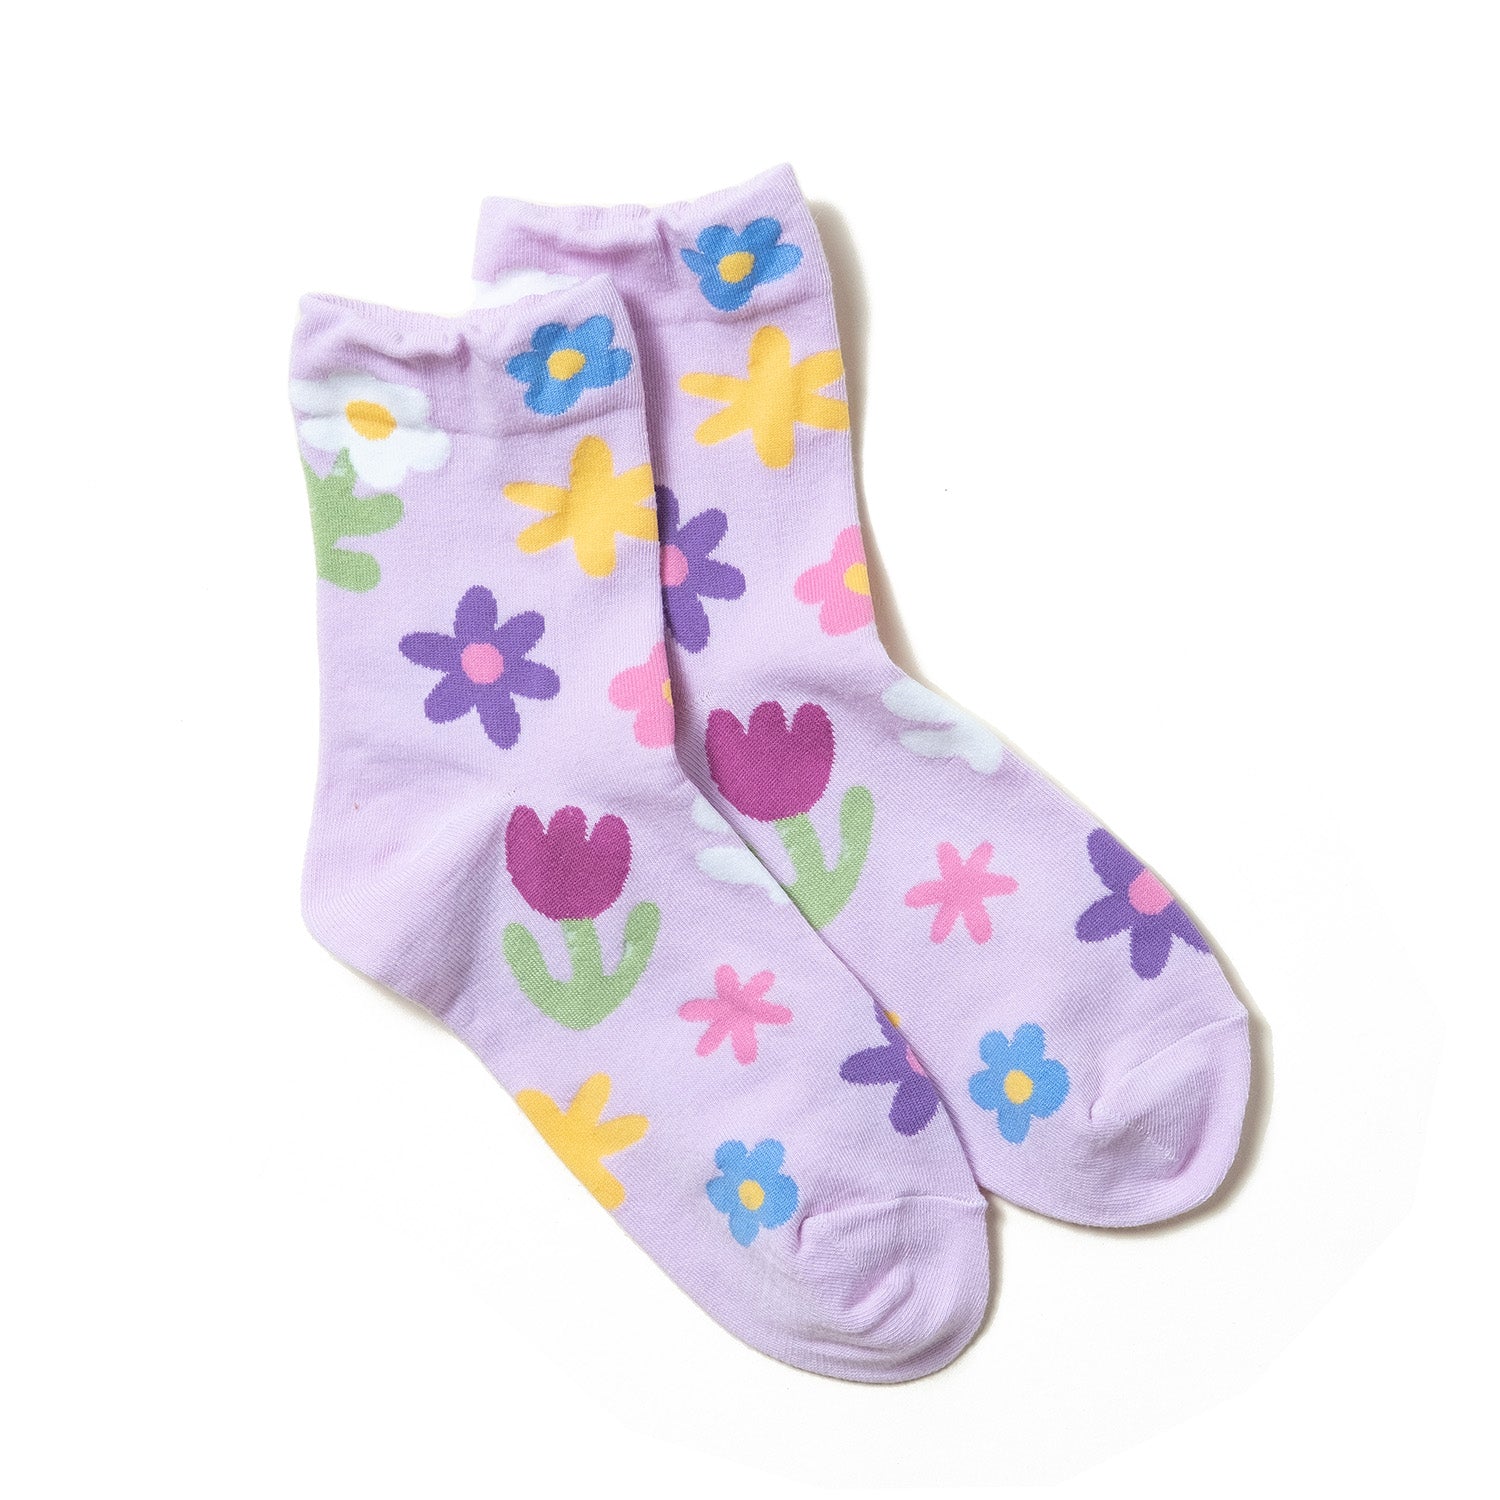 Kikiya women's socks - Flower Dots